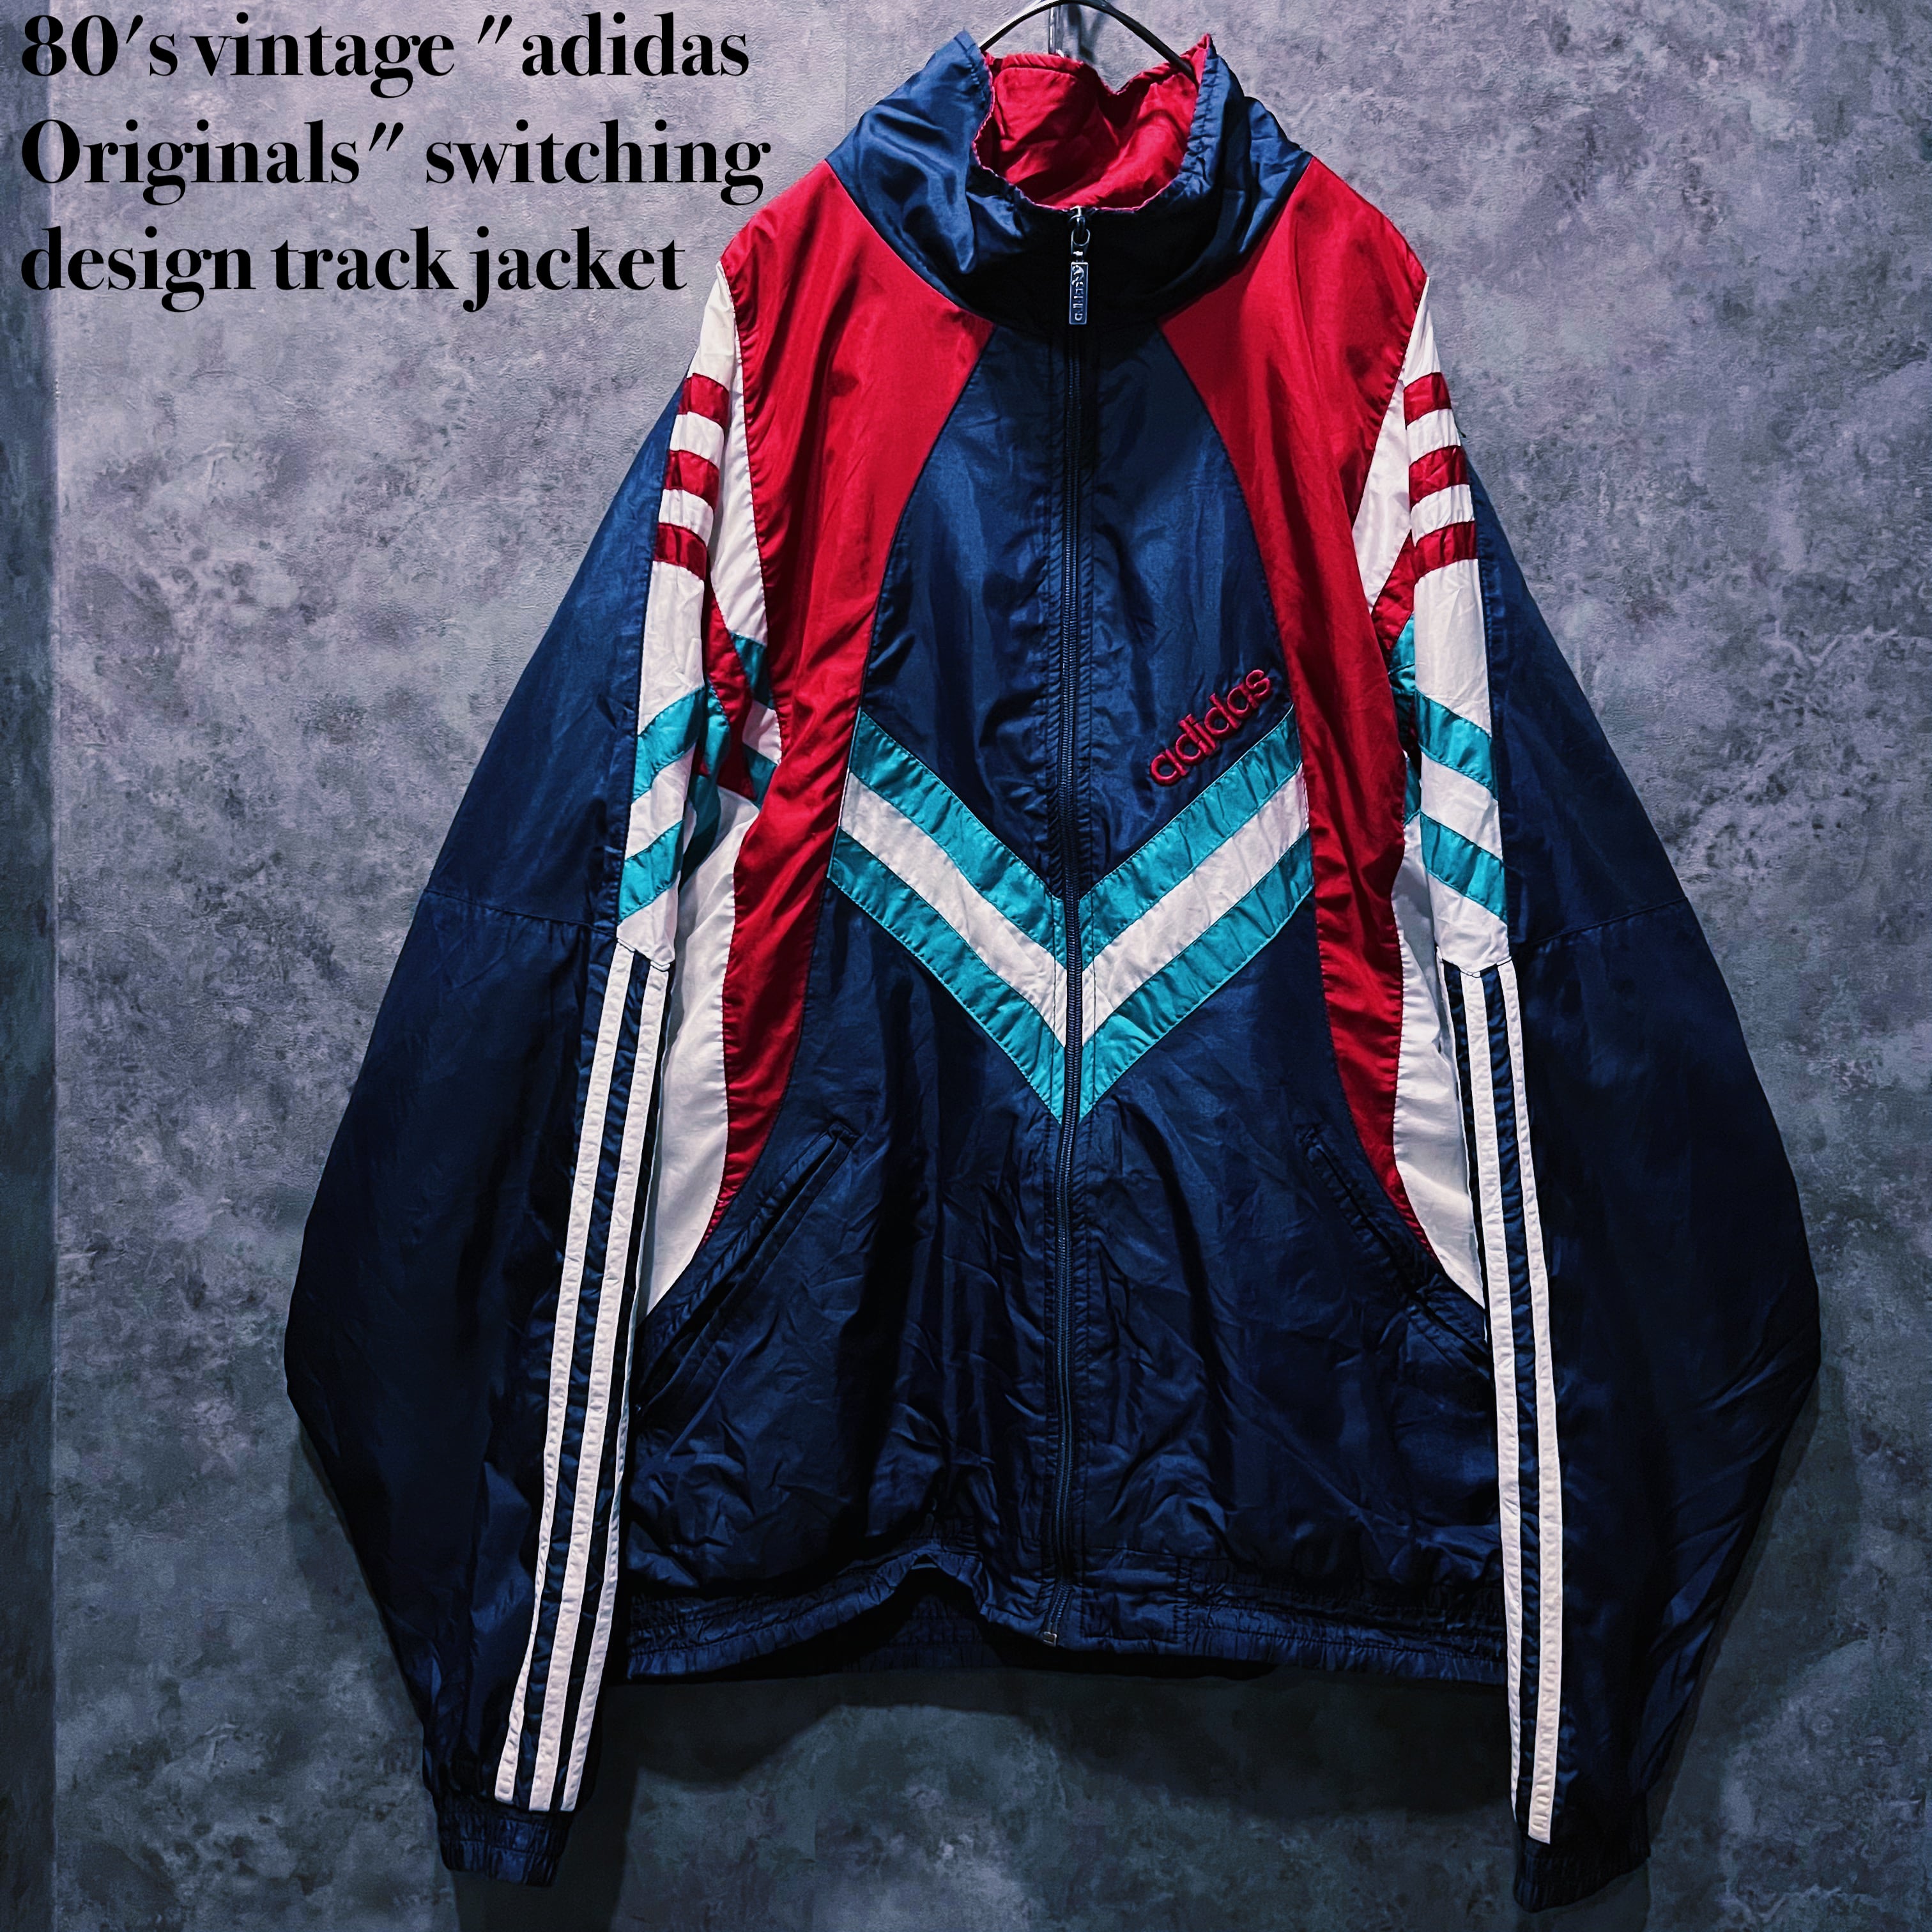 adidas vintage jacket